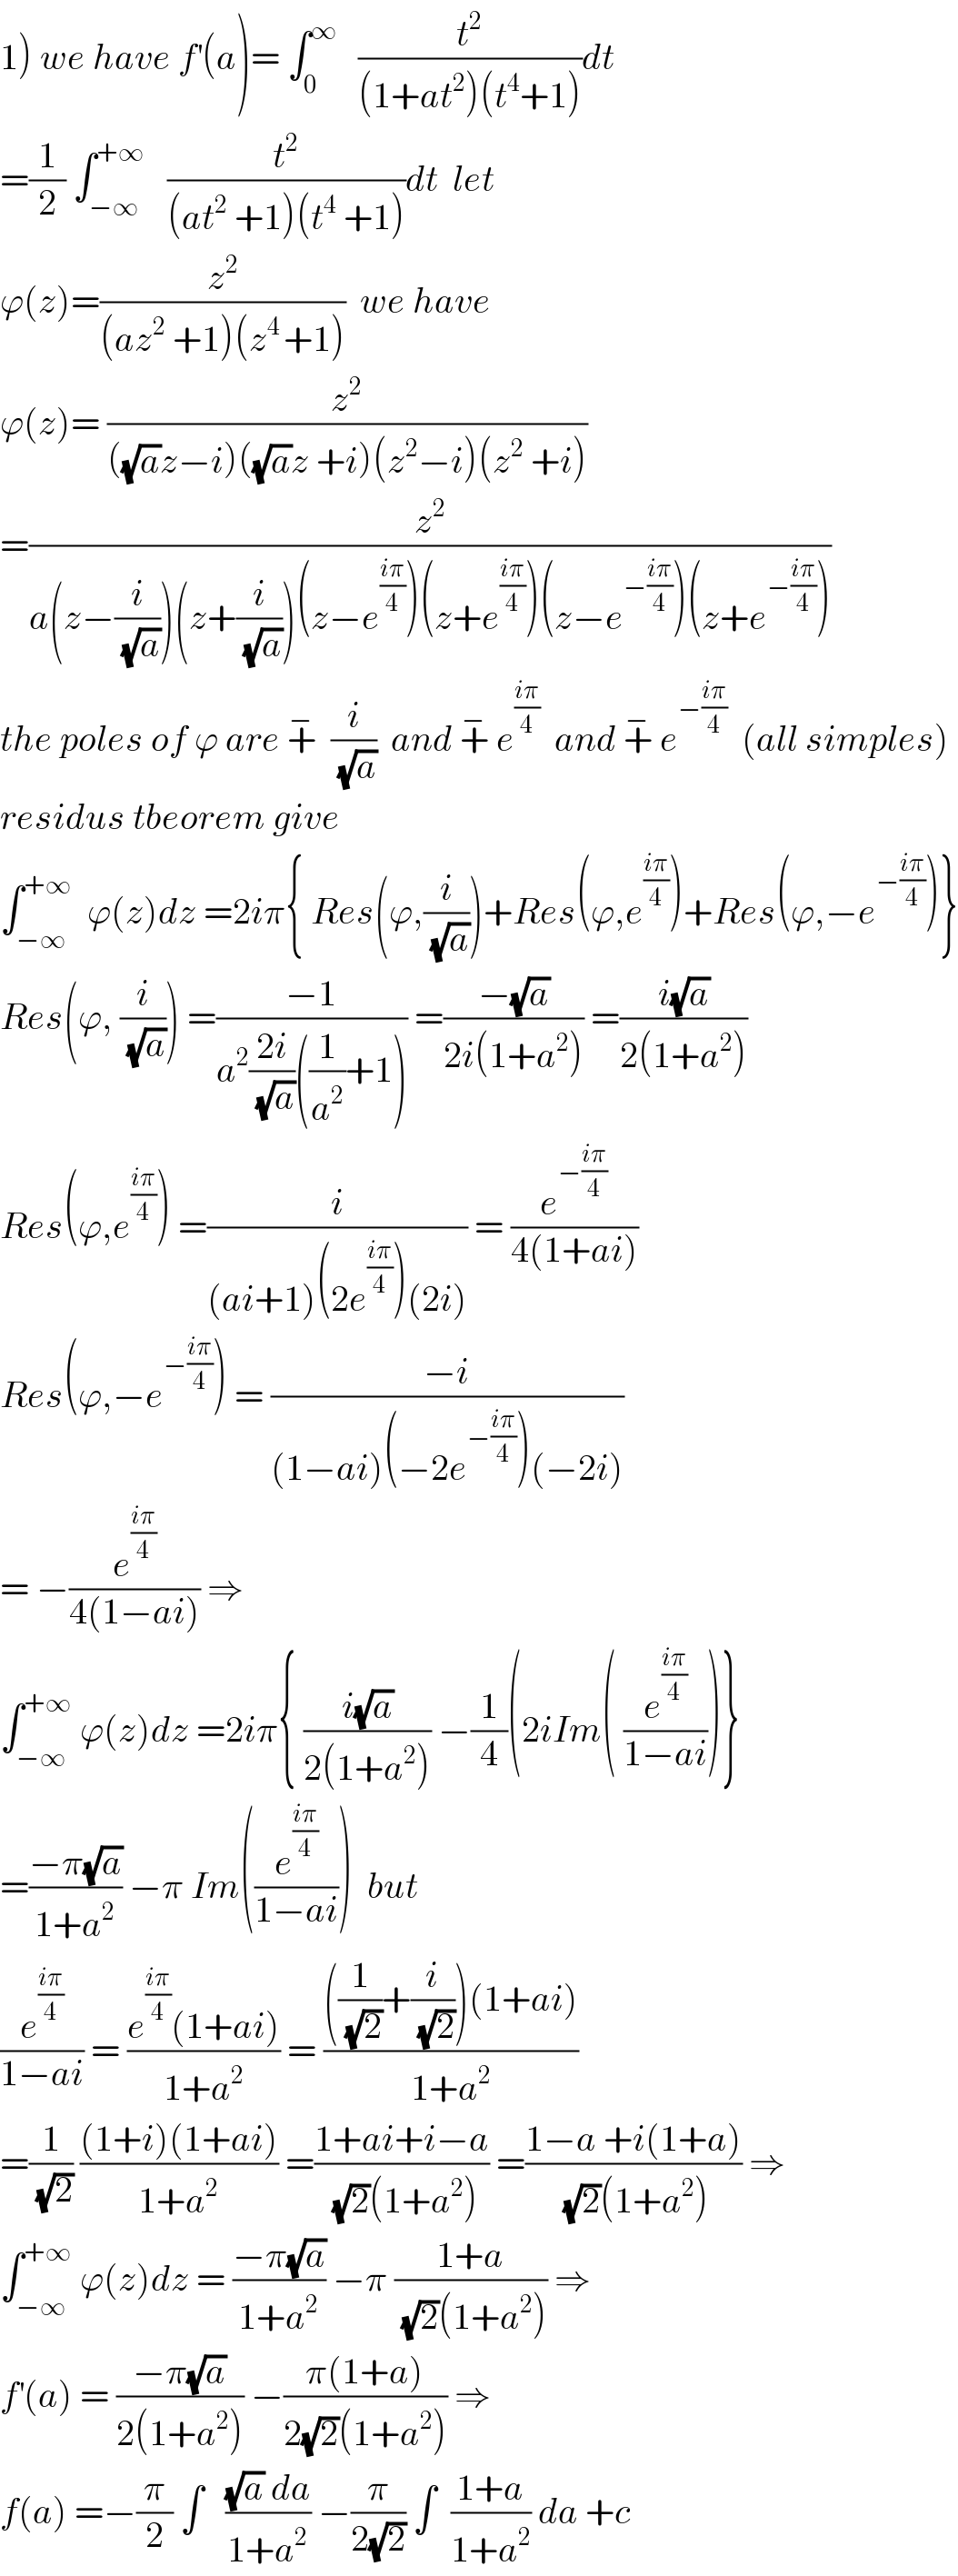 1) we have f^′ (a)= ∫_0 ^∞    (t^2 /((1+at^2 )(t^4 +1)))dt  =(1/2) ∫_(−∞) ^(+∞)    (t^2 /((at^2  +1)(t^4  +1)))dt  let   ϕ(z)=(z^2 /((az^2  +1)(z^(4 ) +1)))  we have   ϕ(z)= (z^2 /(((√a)z−i)((√a)z +i)(z^2 −i)(z^2  +i)))  =(z^2 /(a(z−(i/(√a)))(z+(i/(√a)))(z−e^((iπ)/4) )(z+e^((iπ)/4) )(z−e^(−((iπ)/4)) )(z+e^(−((iπ)/4)) )))  the poles of ϕ are +^−   (i/(√a))  and +^−  e^((iπ)/4)   and +^−  e^(−((iπ)/4))   (all simples)  residus tbeorem give  ∫_(−∞) ^(+∞)   ϕ(z)dz =2iπ{ Res(ϕ,(i/(√a)))+Res(ϕ,e^((iπ)/4) )+Res(ϕ,−e^(−((iπ)/4)) )}  Res(ϕ, (i/(√a))) =((−1)/(a^2 ((2i)/(√a))((1/a^2 )+1))) =((−(√a))/(2i(1+a^2 ))) =((i(√a))/(2(1+a^2 )))  Res(ϕ,e^((iπ)/4) ) =(i/((ai+1)(2e^((iπ)/4) )(2i))) = (e^(−((iπ)/4)) /(4(1+ai)))  Res(ϕ,−e^(−((iπ)/4)) ) = ((−i)/((1−ai)(−2e^(−((iπ)/4)) )(−2i)))  = −(e^((iπ)/4) /(4(1−ai))) ⇒  ∫_(−∞) ^(+∞)  ϕ(z)dz =2iπ{ ((i(√a))/(2(1+a^2 ))) −(1/4)(2iIm( (e^((iπ)/4) /(1−ai)))}  =((−π(√a))/(1+a^2 )) −π Im((e^((iπ)/4) /(1−ai)))  but  (e^((iπ)/4) /(1−ai)) = ((e^((iπ)/4) (1+ai))/(1+a^2 )) = ((((1/(√2))+(i/(√2)))(1+ai))/(1+a^2 ))  =(1/(√2)) (((1+i)(1+ai))/(1+a^2 )) =((1+ai+i−a)/((√2)(1+a^2 ))) =((1−a +i(1+a))/((√2)(1+a^2 ))) ⇒  ∫_(−∞) ^(+∞)  ϕ(z)dz = ((−π(√a))/(1+a^2 )) −π ((1+a)/((√2)(1+a^2 ))) ⇒  f^′ (a) = ((−π(√a))/(2(1+a^2 ))) −((π(1+a))/(2(√2)(1+a^2 ))) ⇒  f(a) =−(π/2) ∫   (((√a) da)/(1+a^2 )) −(π/(2(√2))) ∫  ((1+a)/(1+a^2 )) da +c   